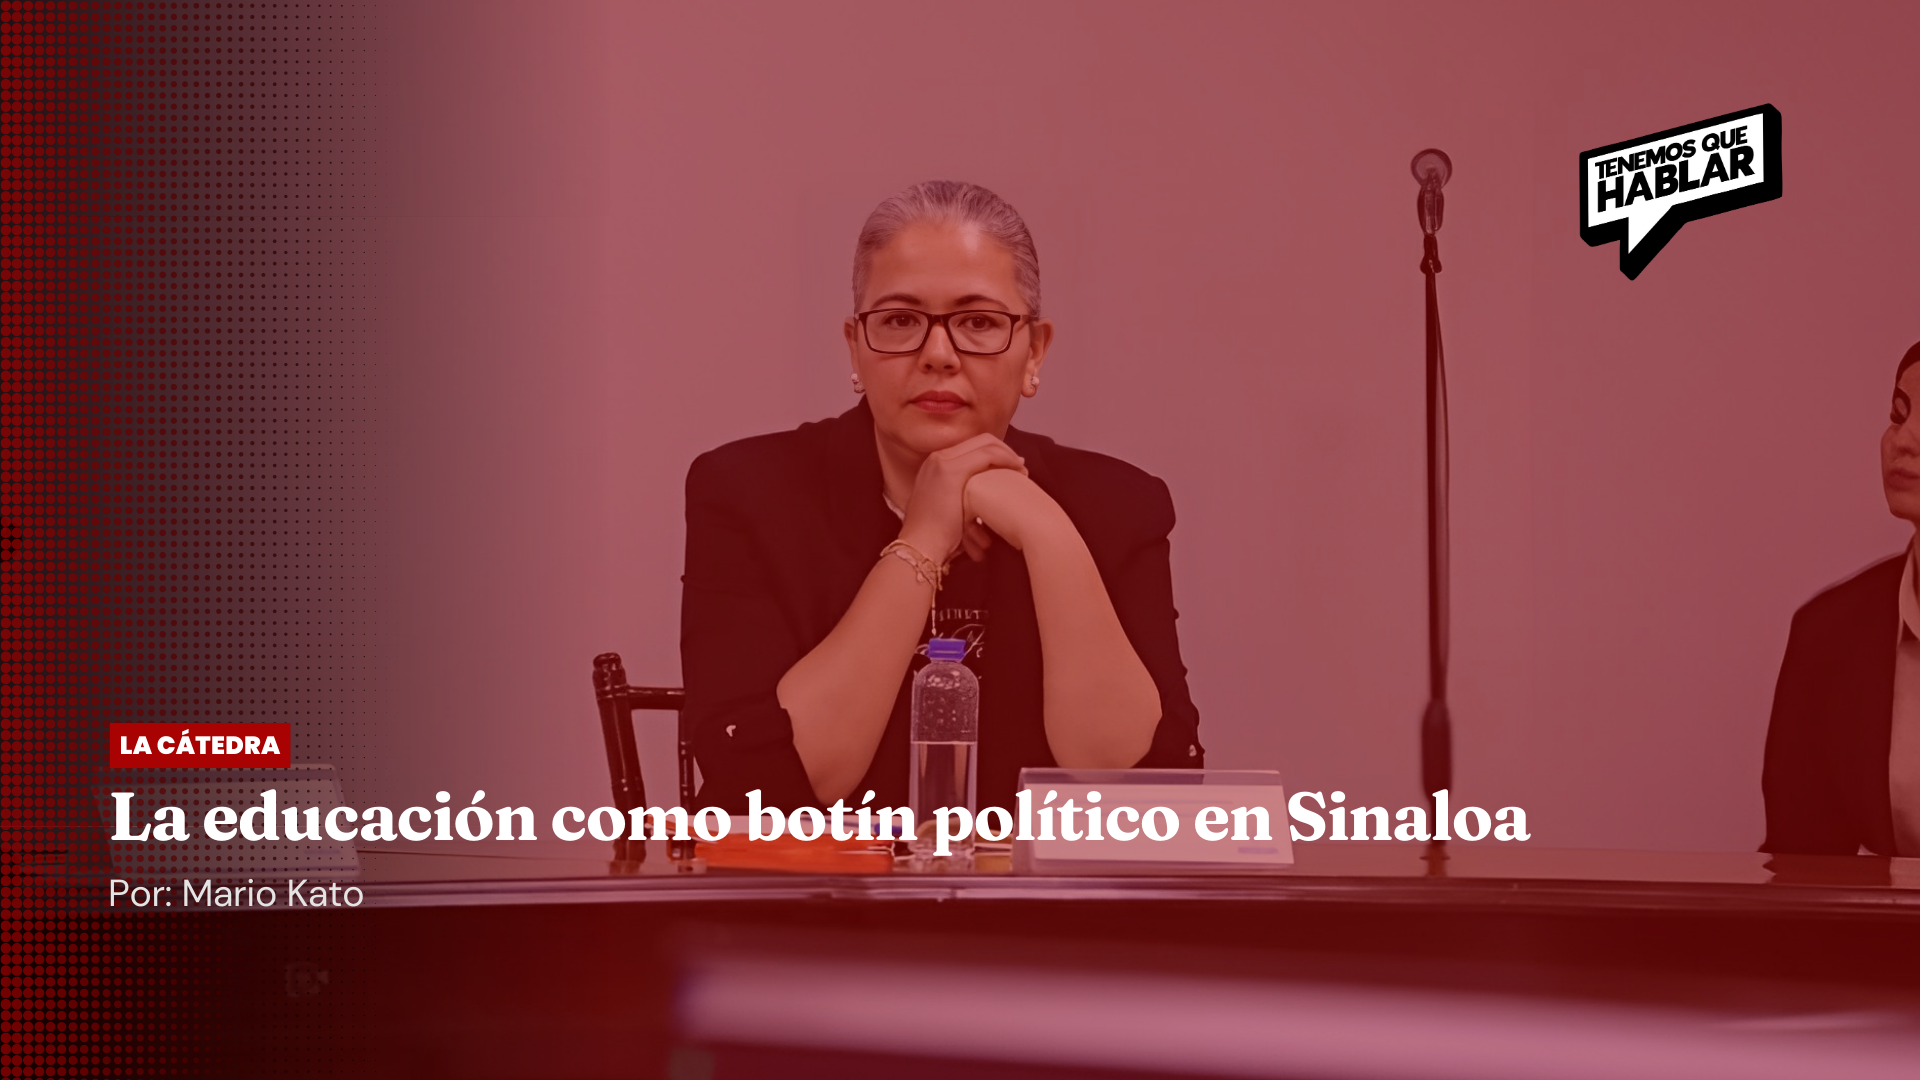 La educación como botín político en Sinaloa